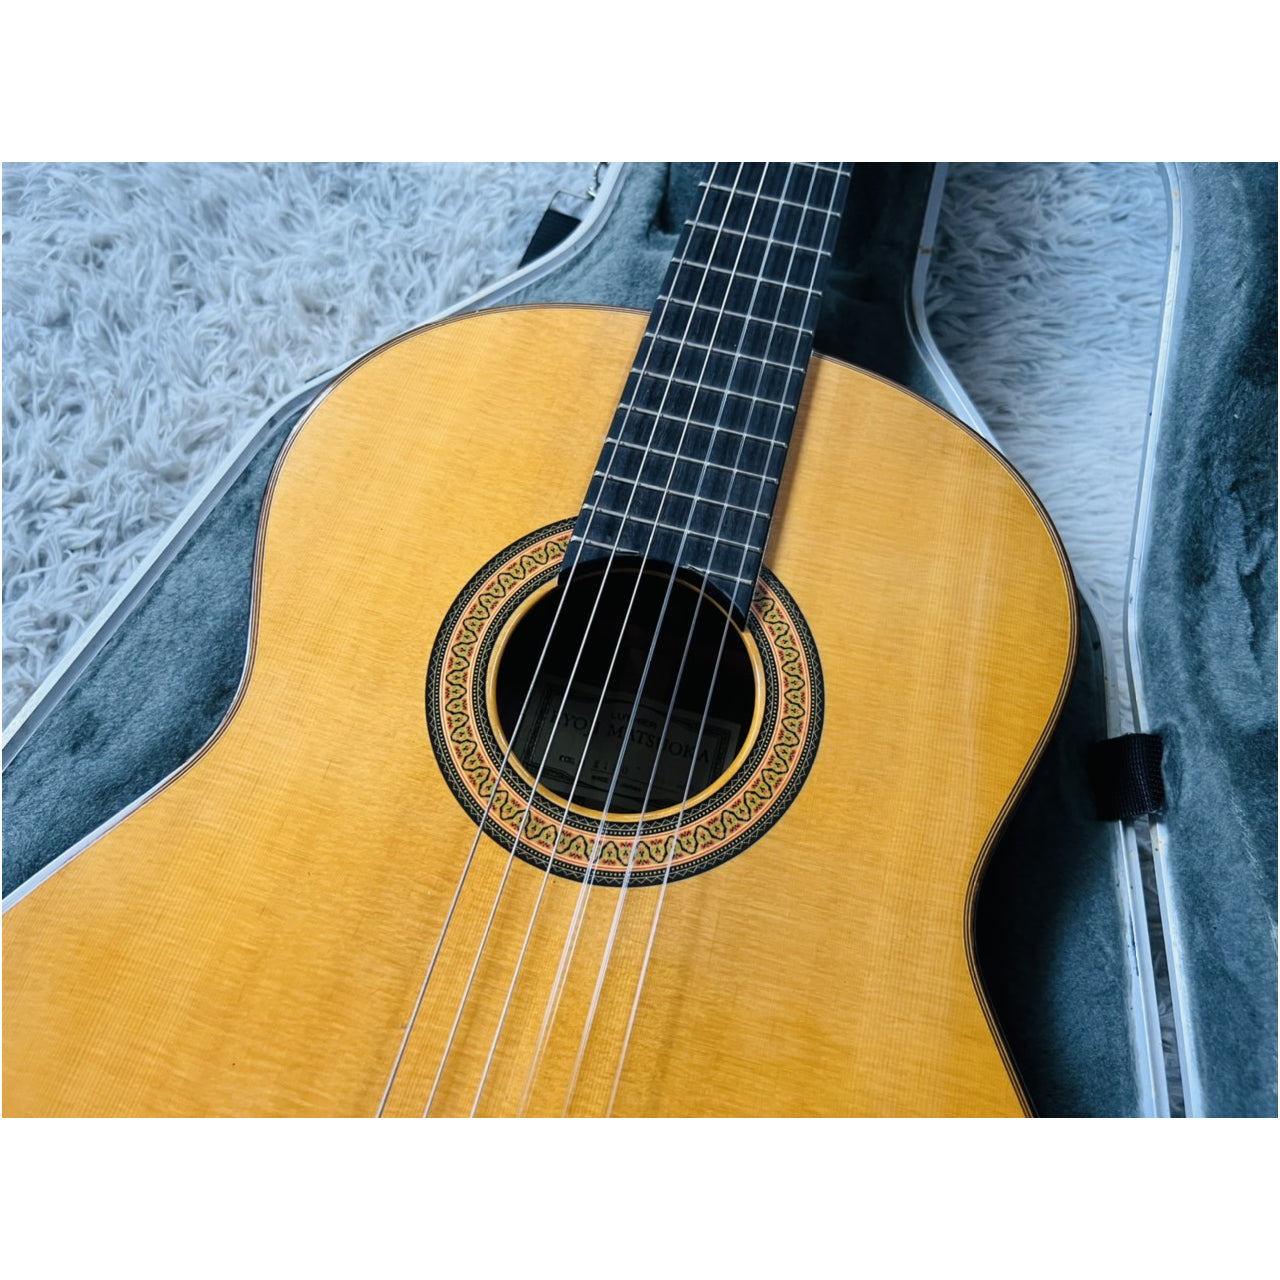 Đàn Guitar Classic Matsuoka M150 (Tem Không Chữ Ký) - Qua Sử Dụng - Việt Music